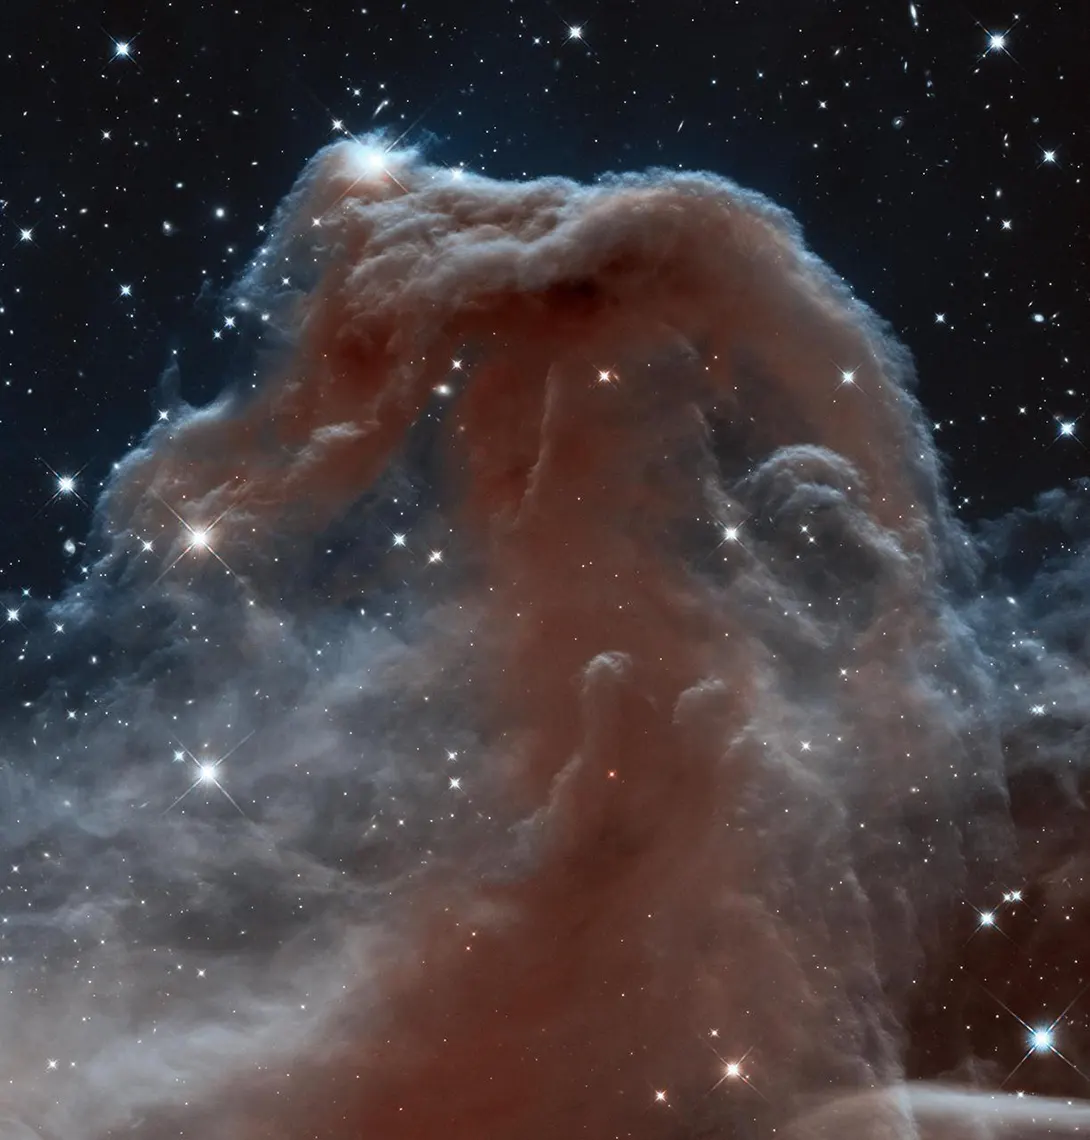 La Nebulosa Cabeza de Caballo